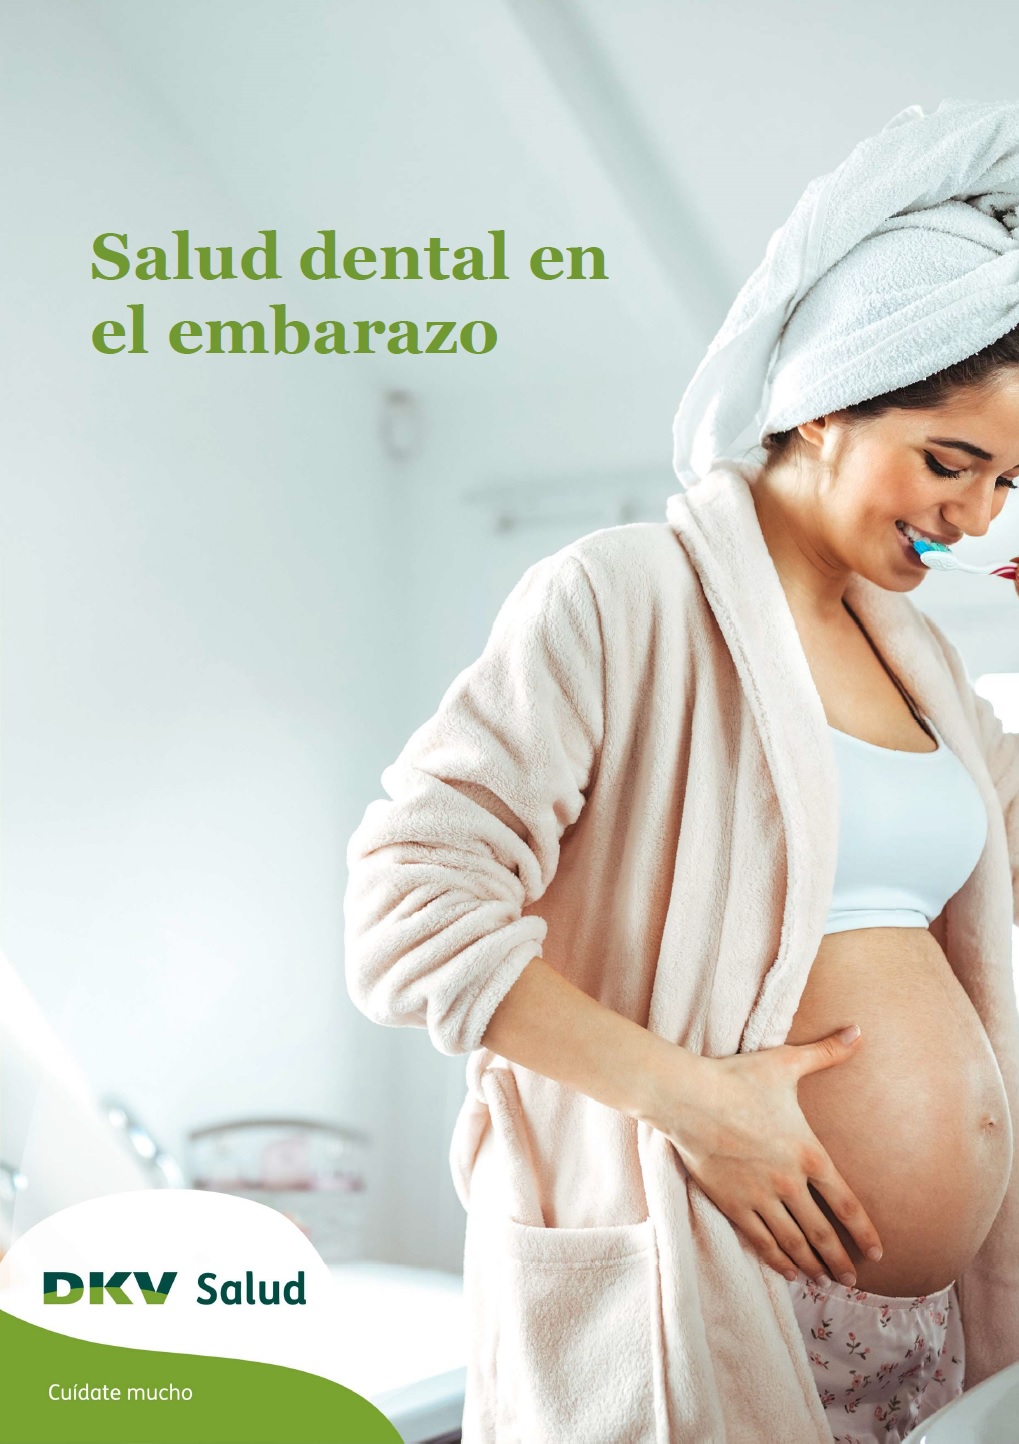 DKV - Salud dental en el embarazo - Portada 2D